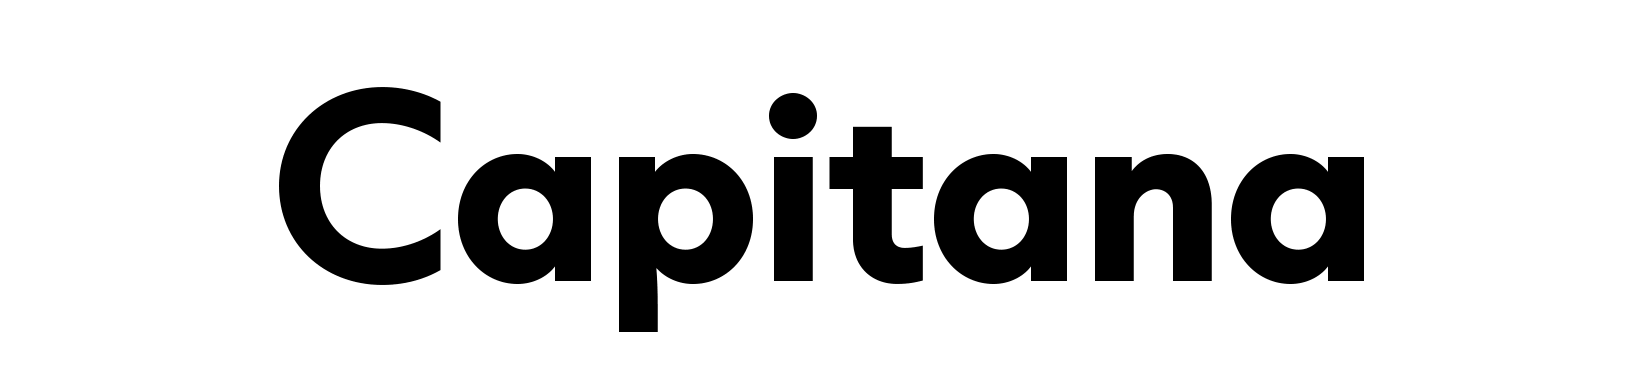 Capitana Typeface